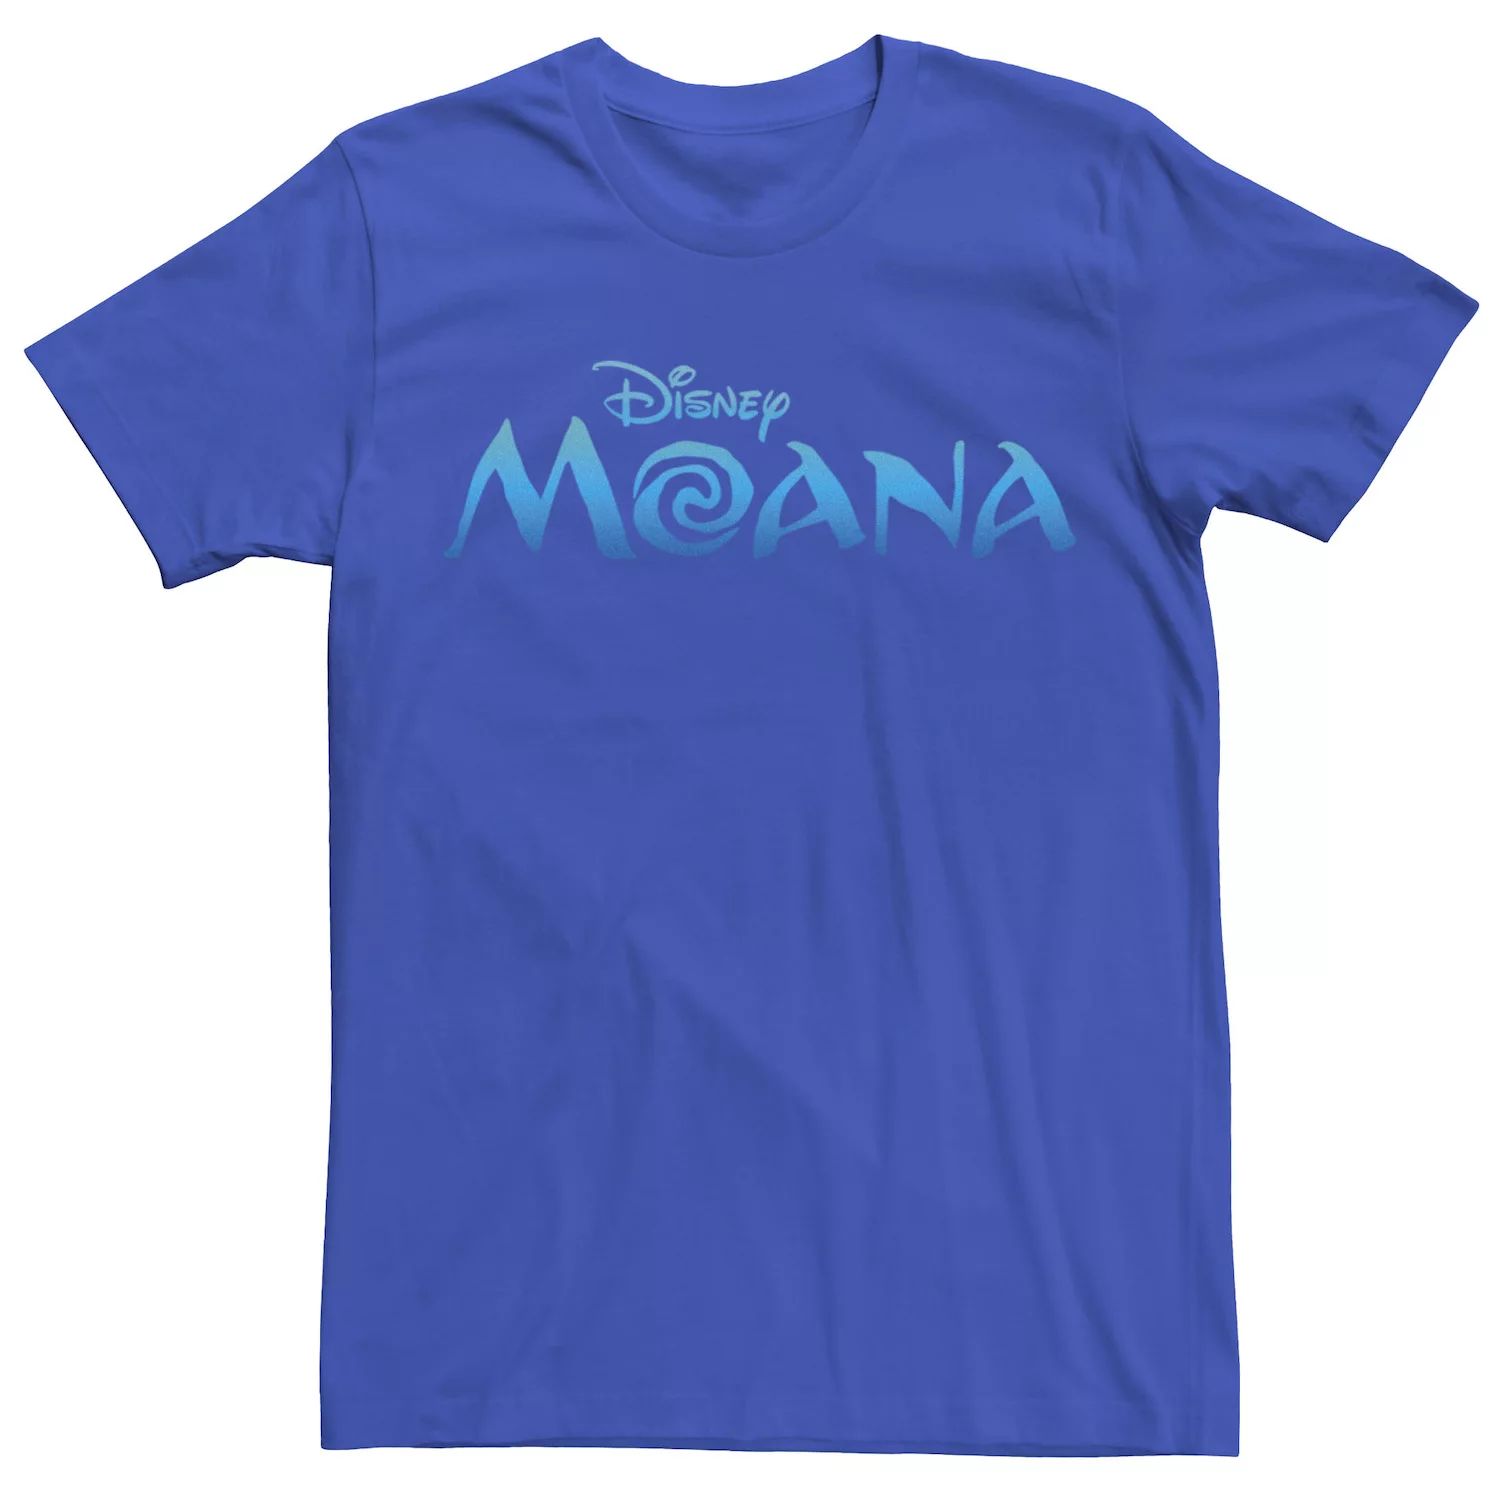 Мужская футболка с официальным логотипом фильма Disney Moana